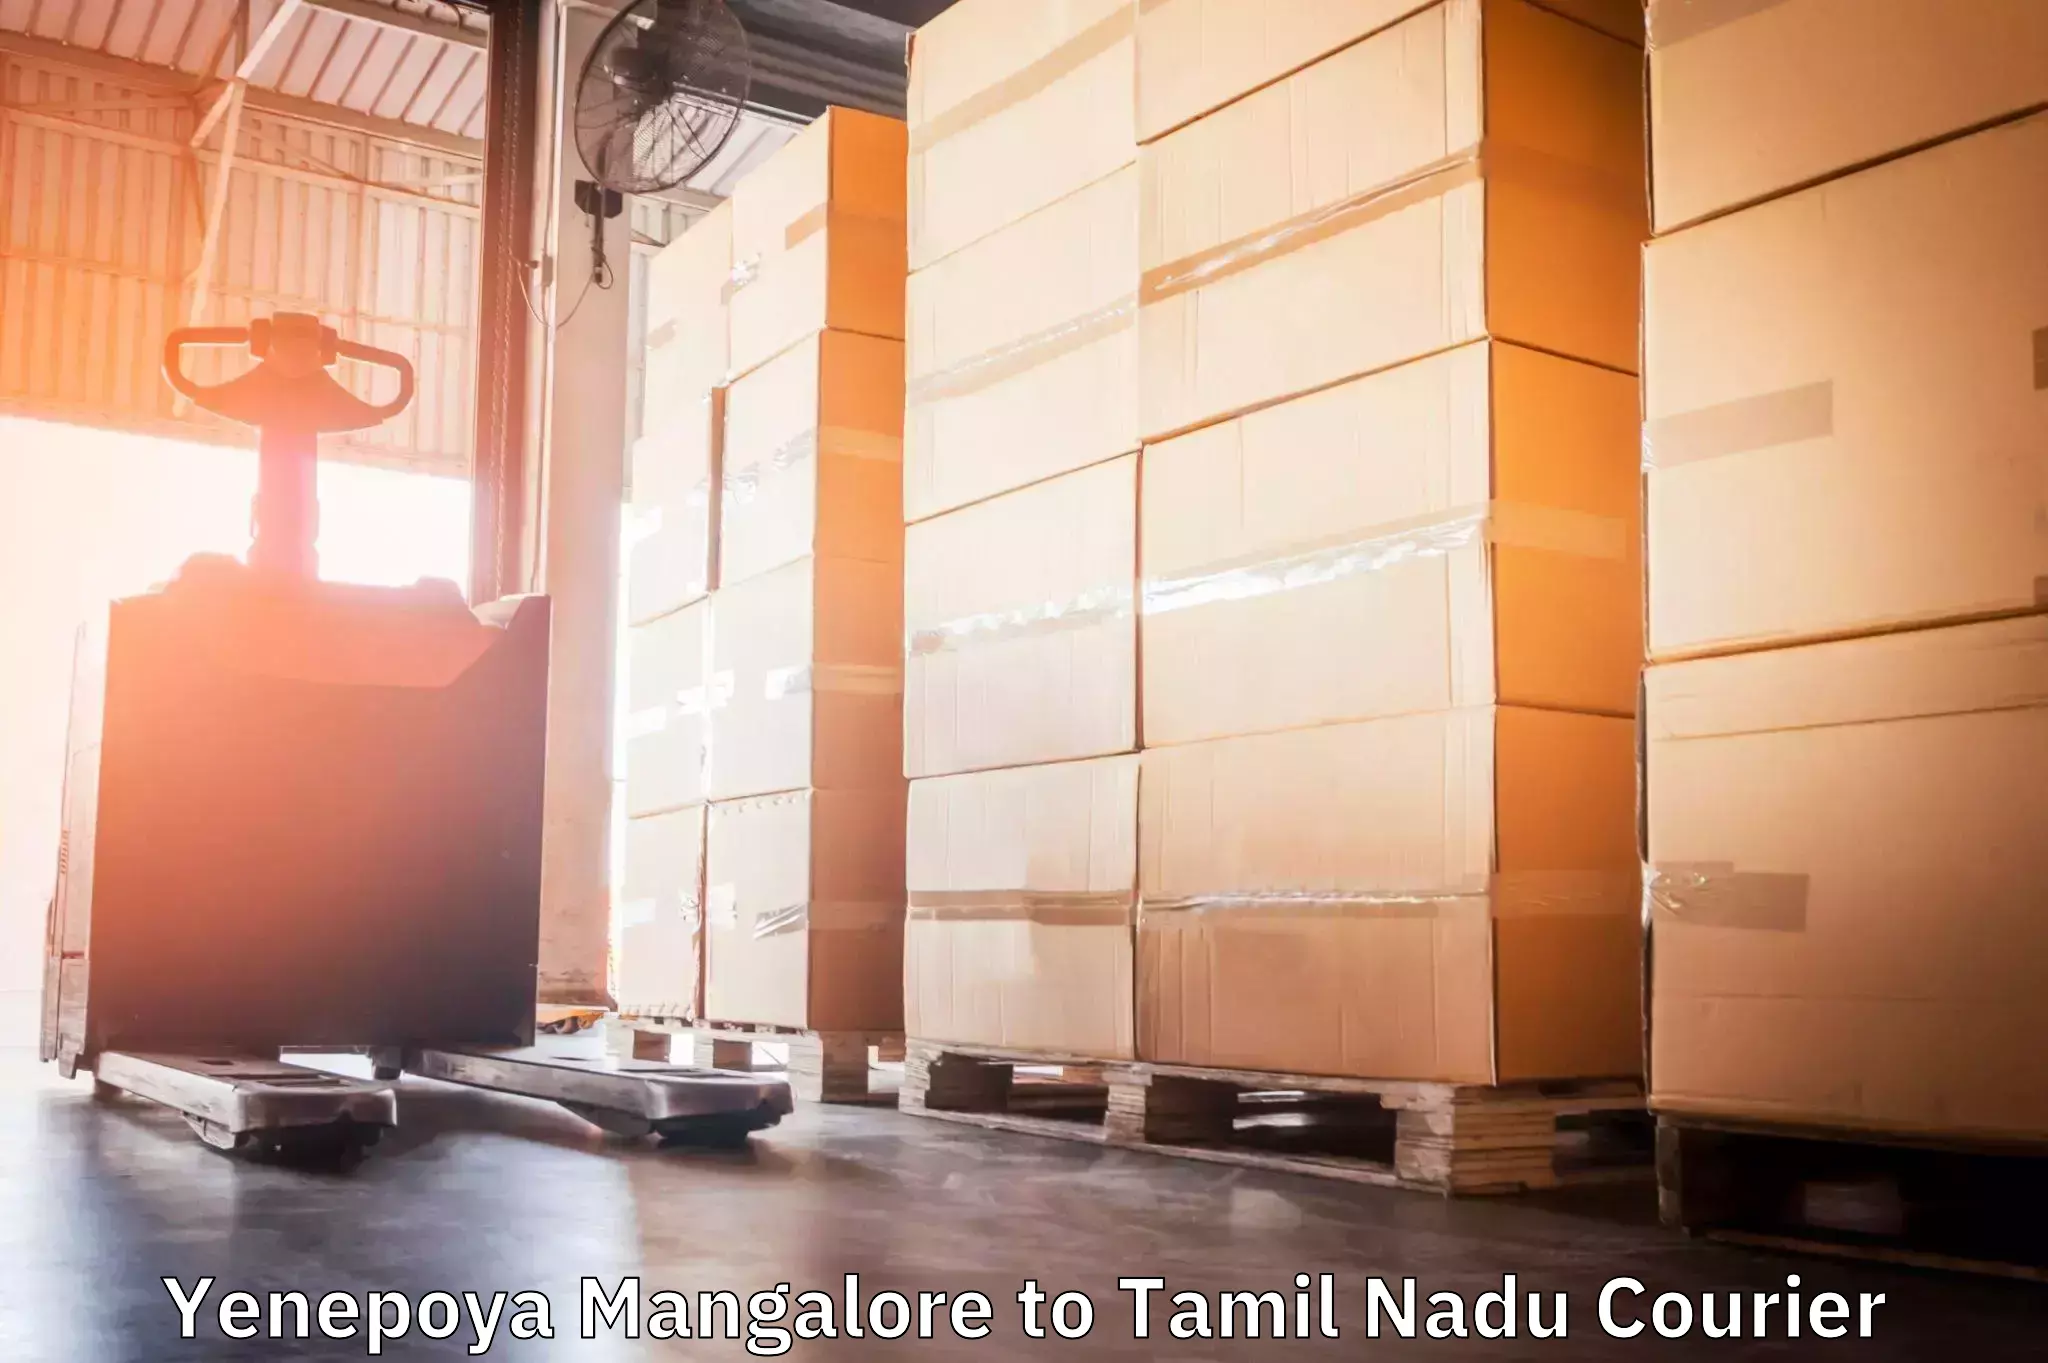 Courier app Yenepoya Mangalore to Ramanathapuram